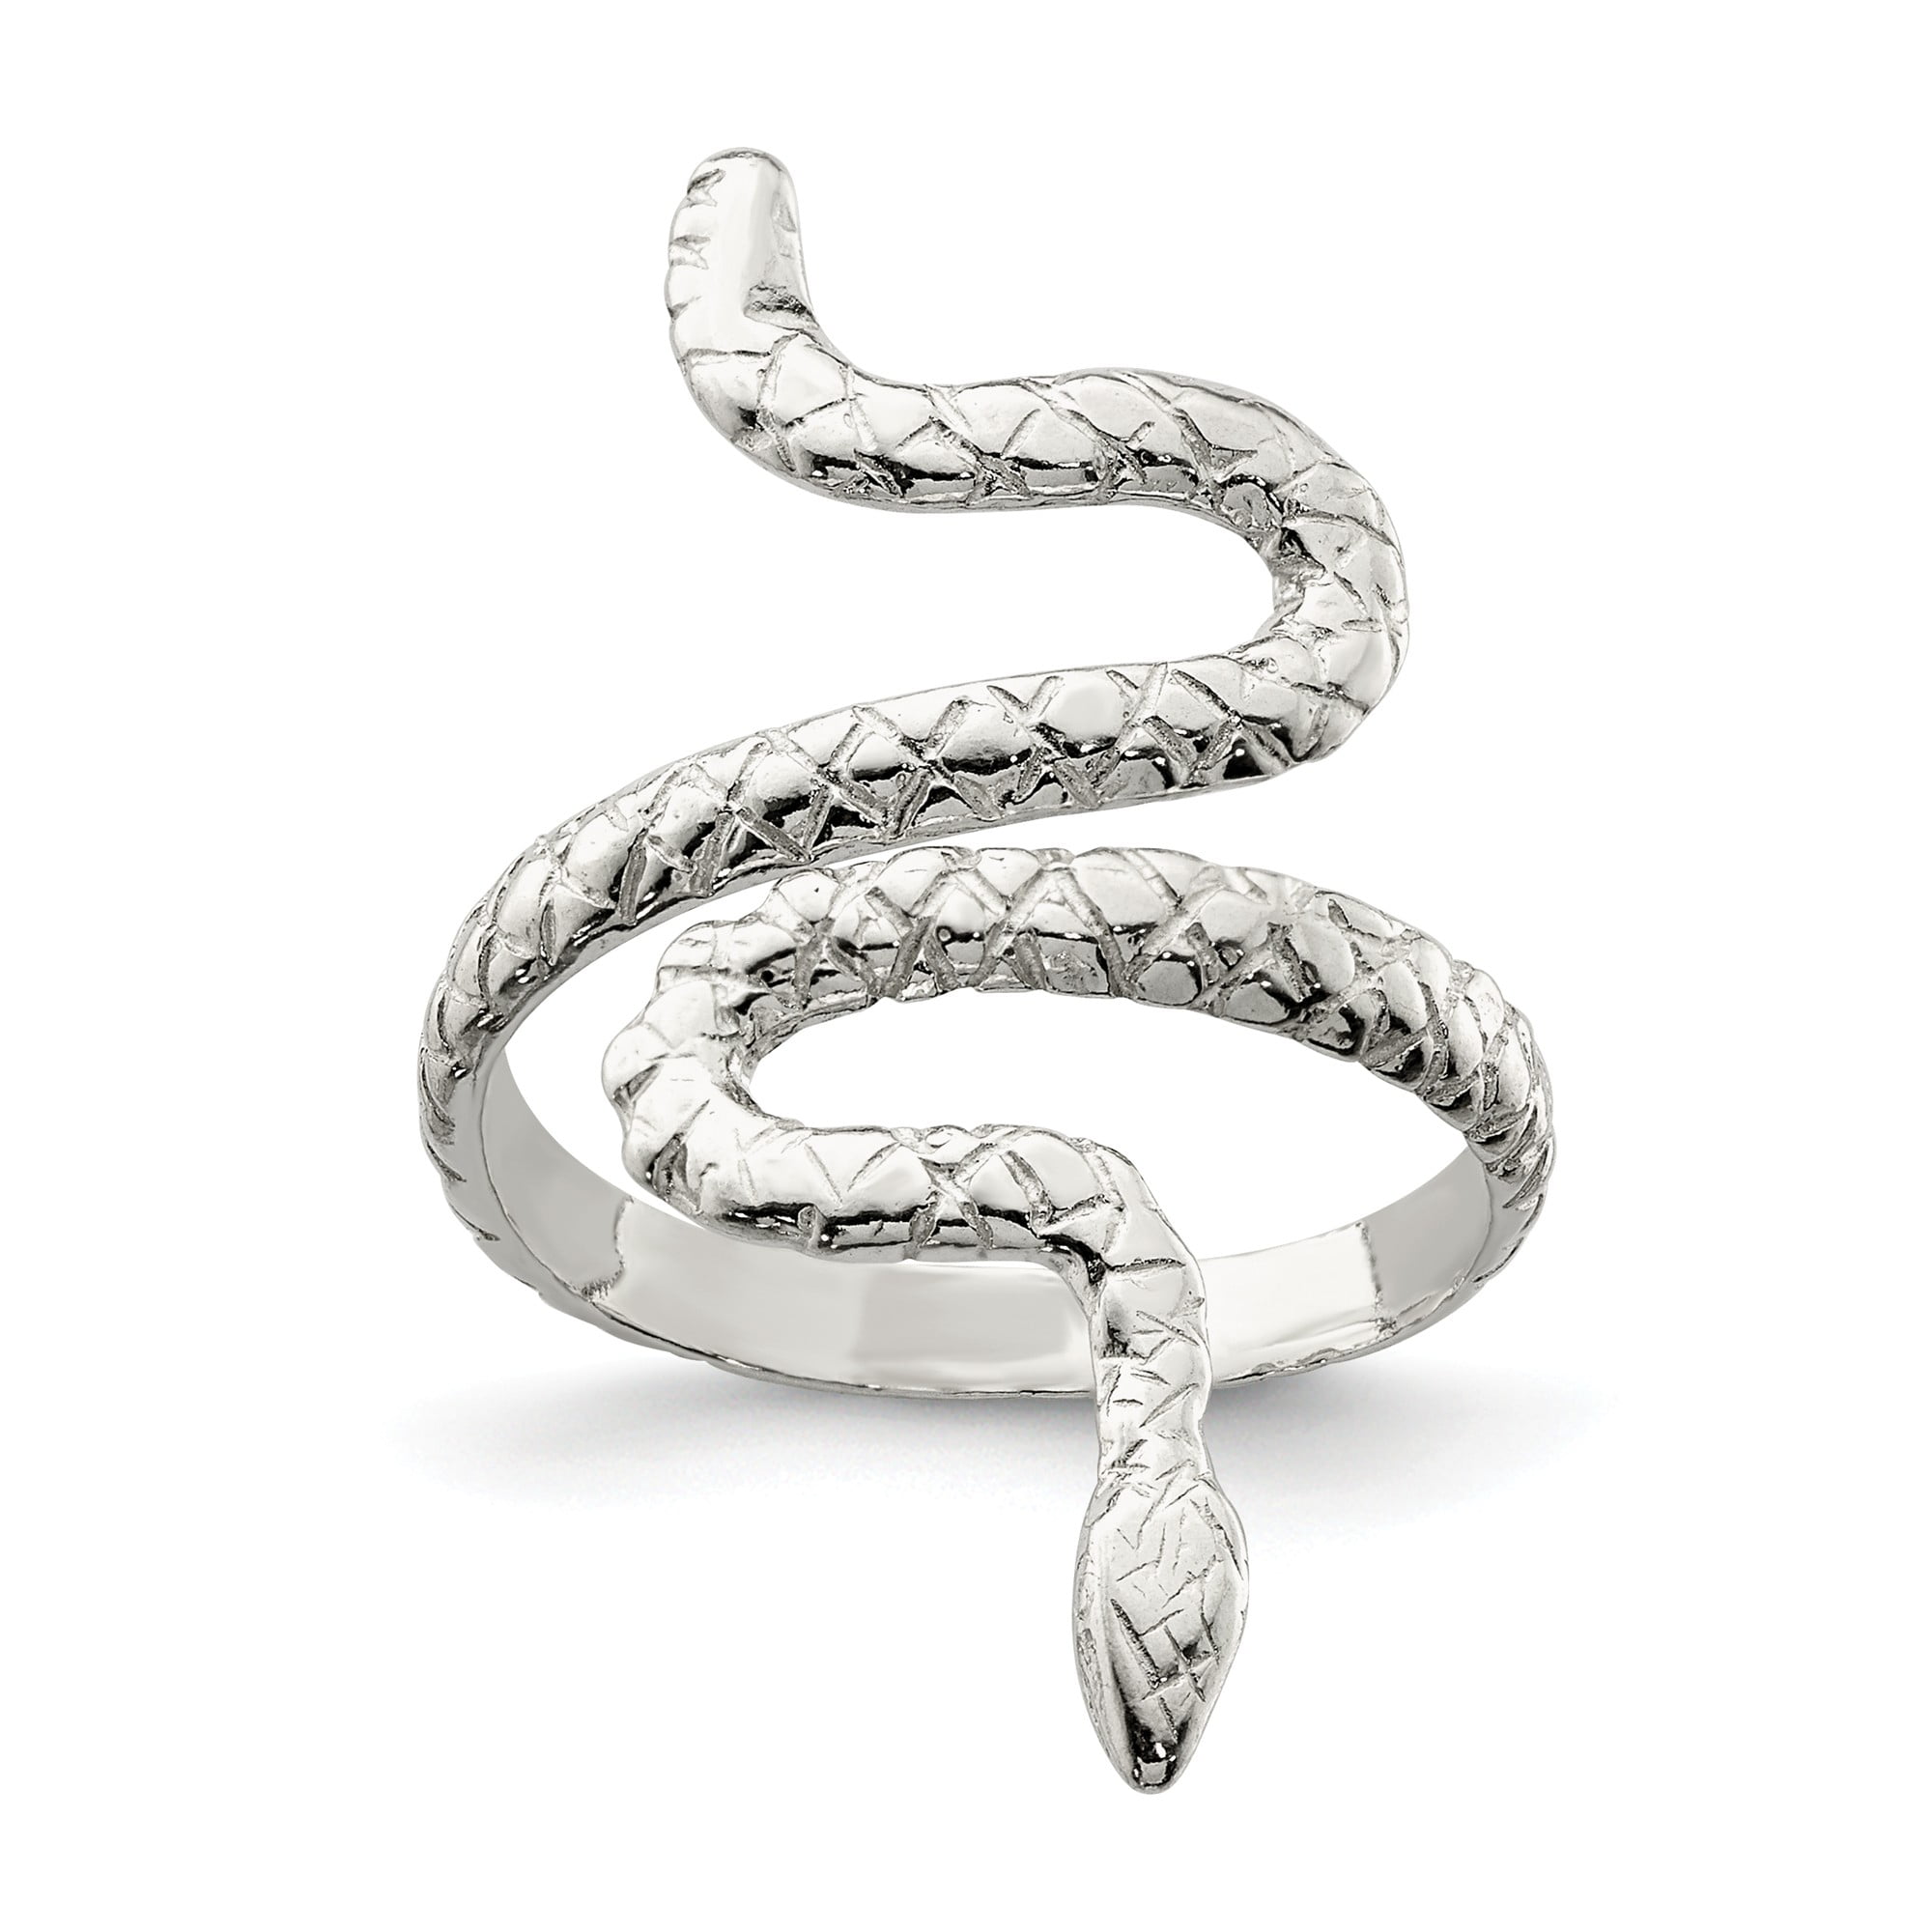 925 Sterling Silver Snake Ring, Snake Diamond Ring, Snake Silver Ring,  Women Snake Ring, Emerald Diamond Eyes Ring Gift for Her - Etsy | Snake  ring silver, Diamond eyes, Snake ring